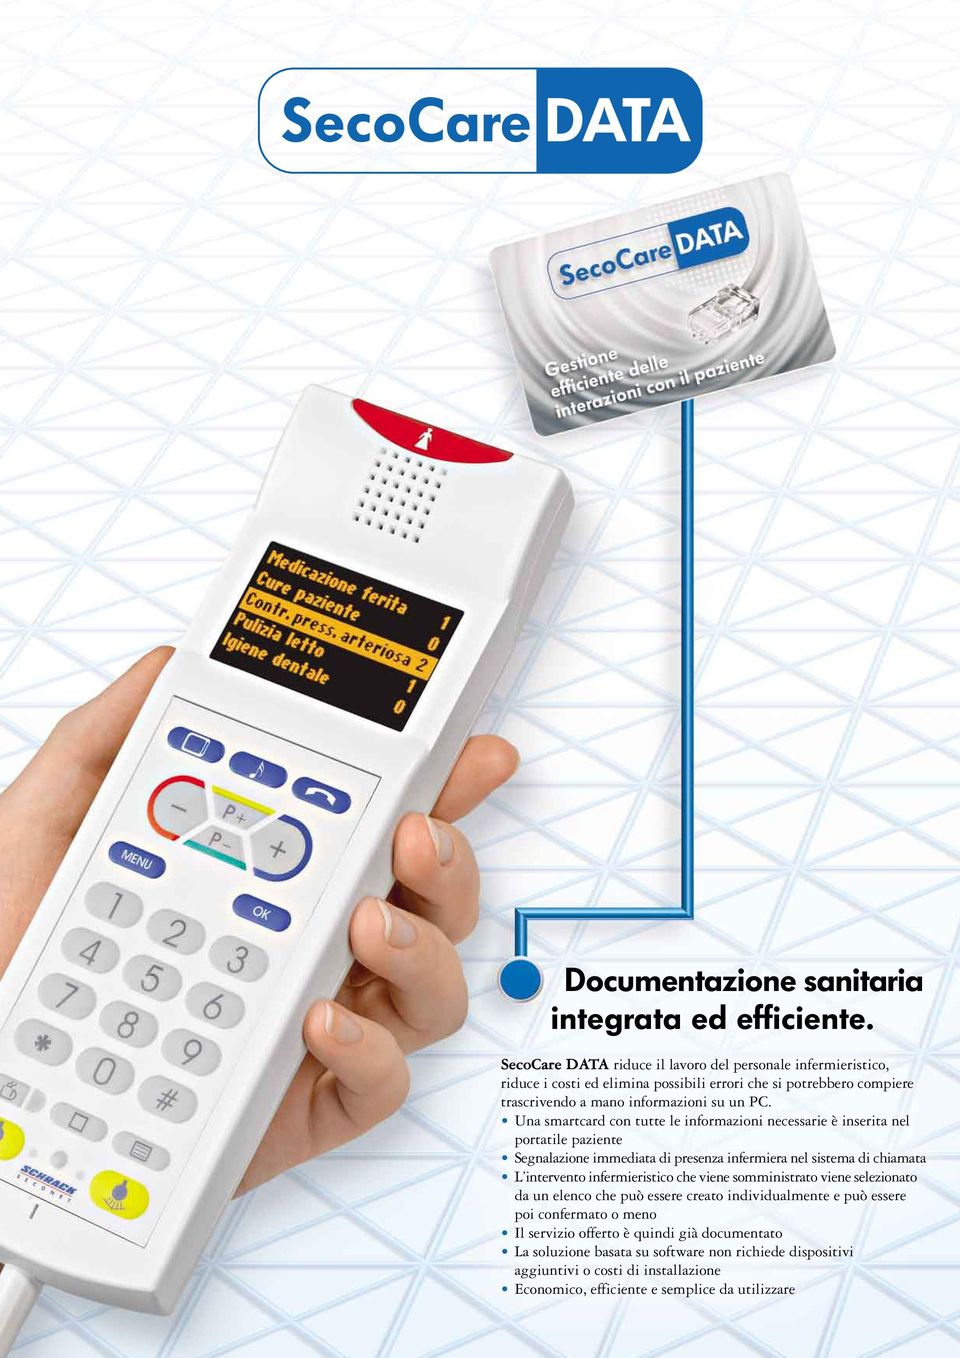 Una smartcard con tutte le informazioni necessarie è inserita nel portatile paziente Segnalazione immediata di presenza infermiera nel sistema di chiamata L intervento infermieristico